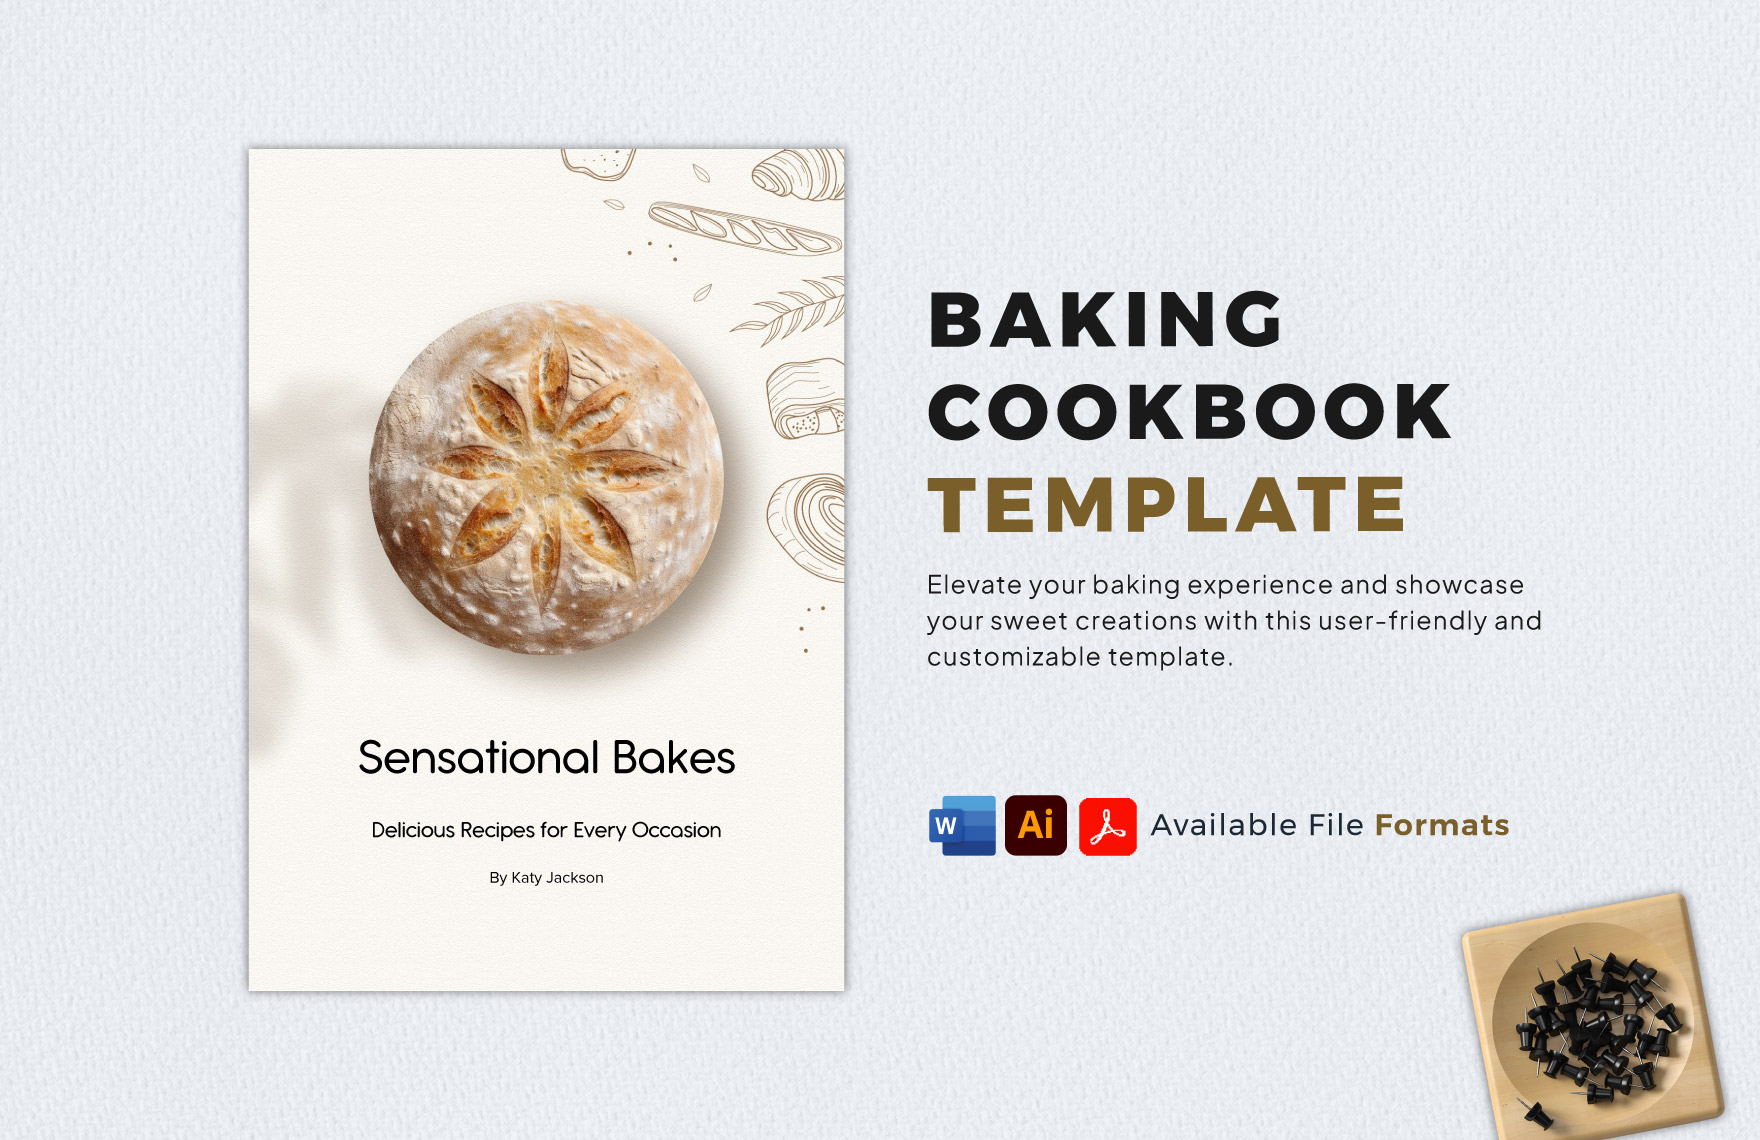 https://images.template.net/275086/baking-cookbook-template-xjzhp.jpg